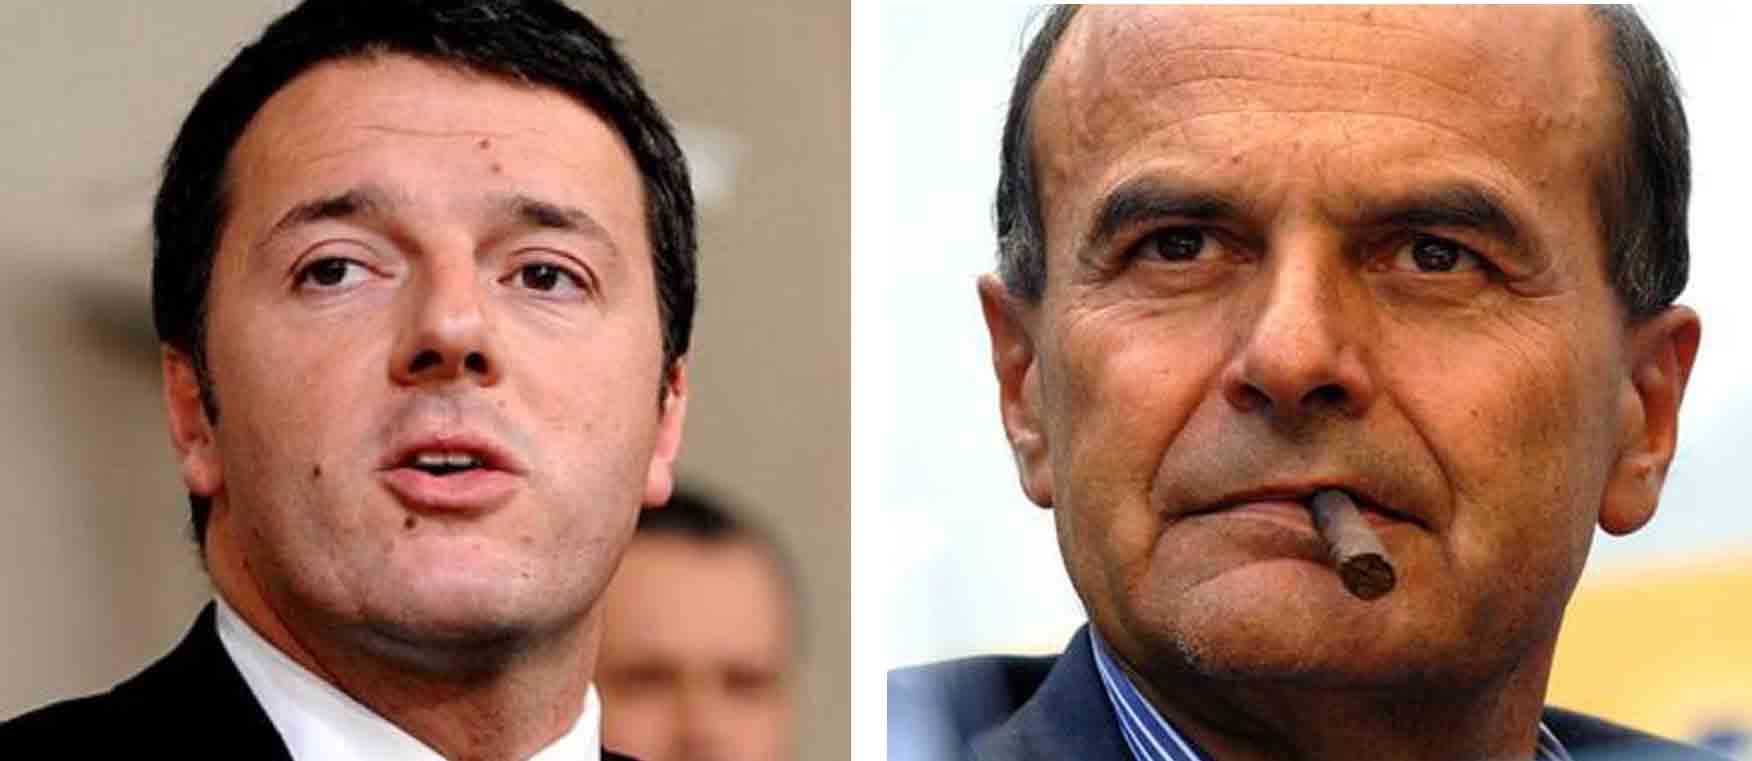 Bersani replica a Renzi: "Berlusconi e Verdini trattati con rispetto, spero capiti anche a me"